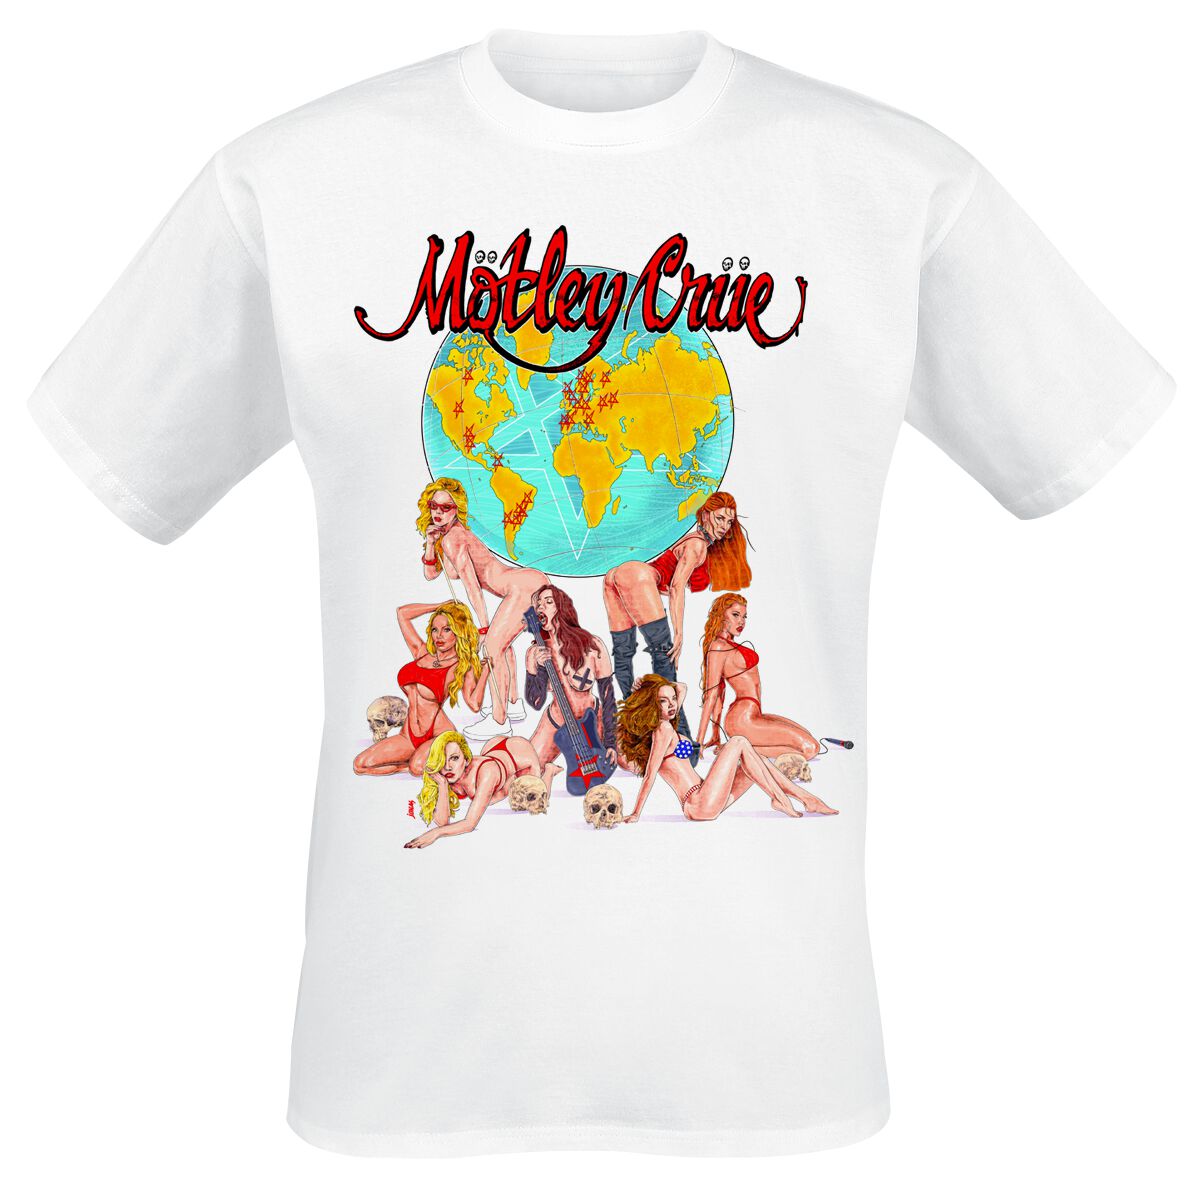 Mötley Crüe T-Shirt - Europe - S bis 4XL - für Männer - Größe M - weiß  - Lizenziertes Merchandise!